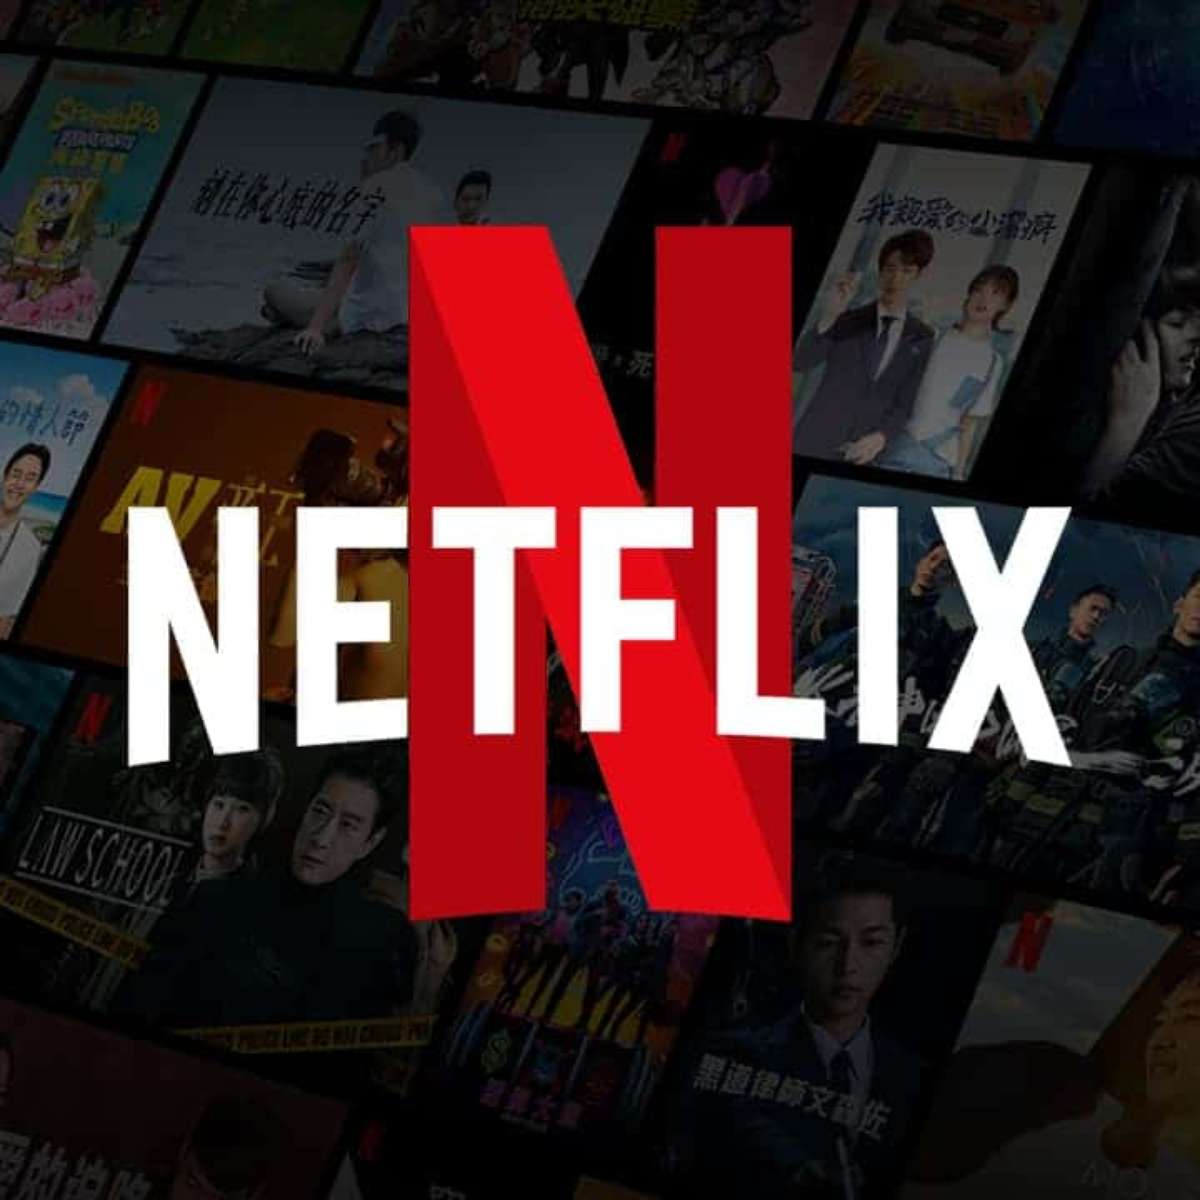 Taxa extra: como a Netflix sabe onde está um dispositivo?, Tecnologia